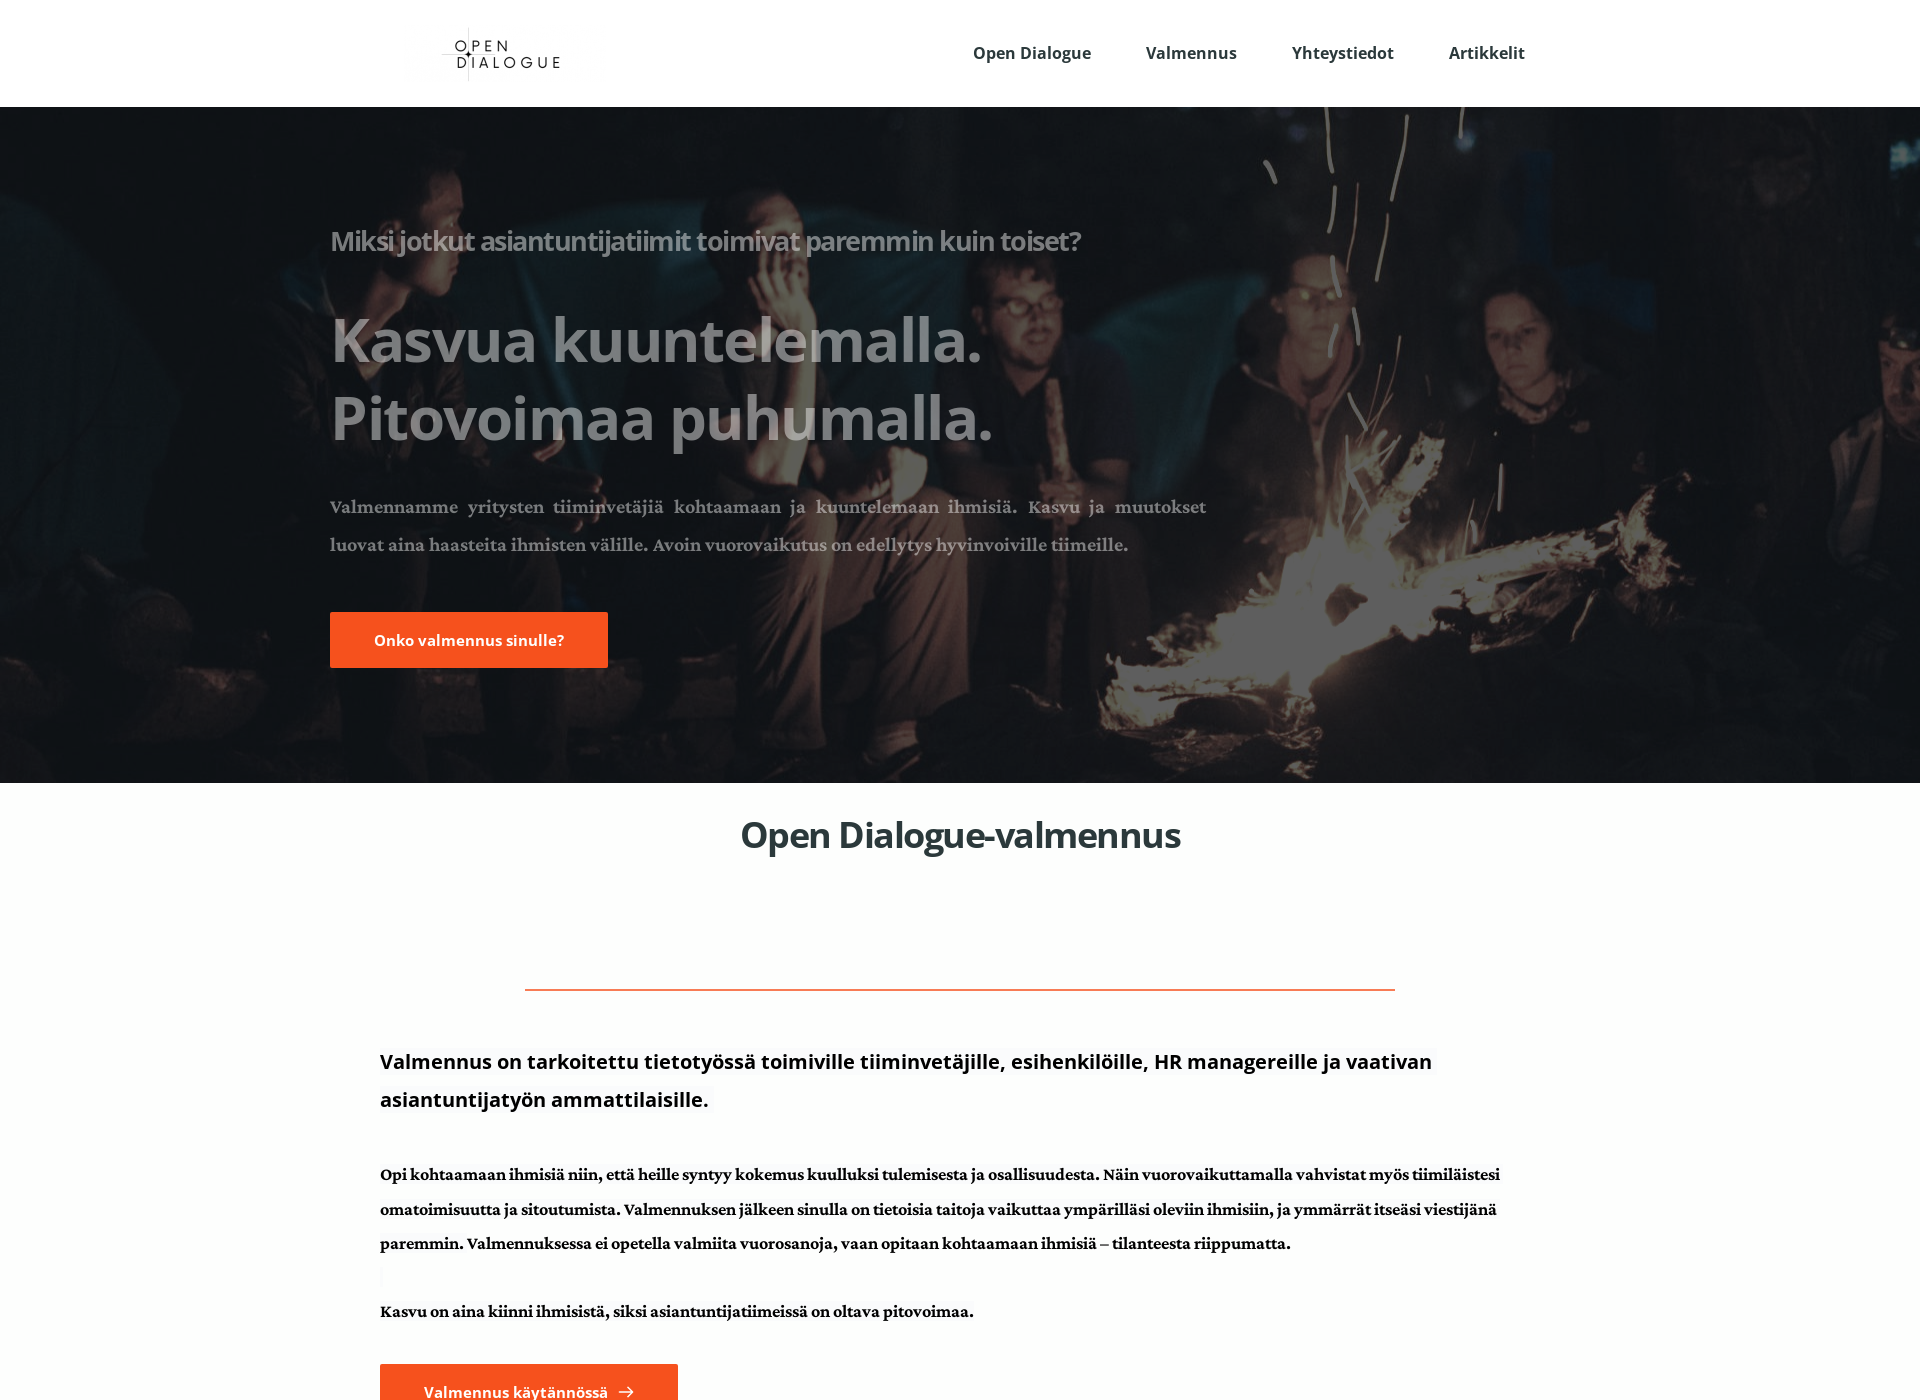 Näyttökuva opendialogue.fi